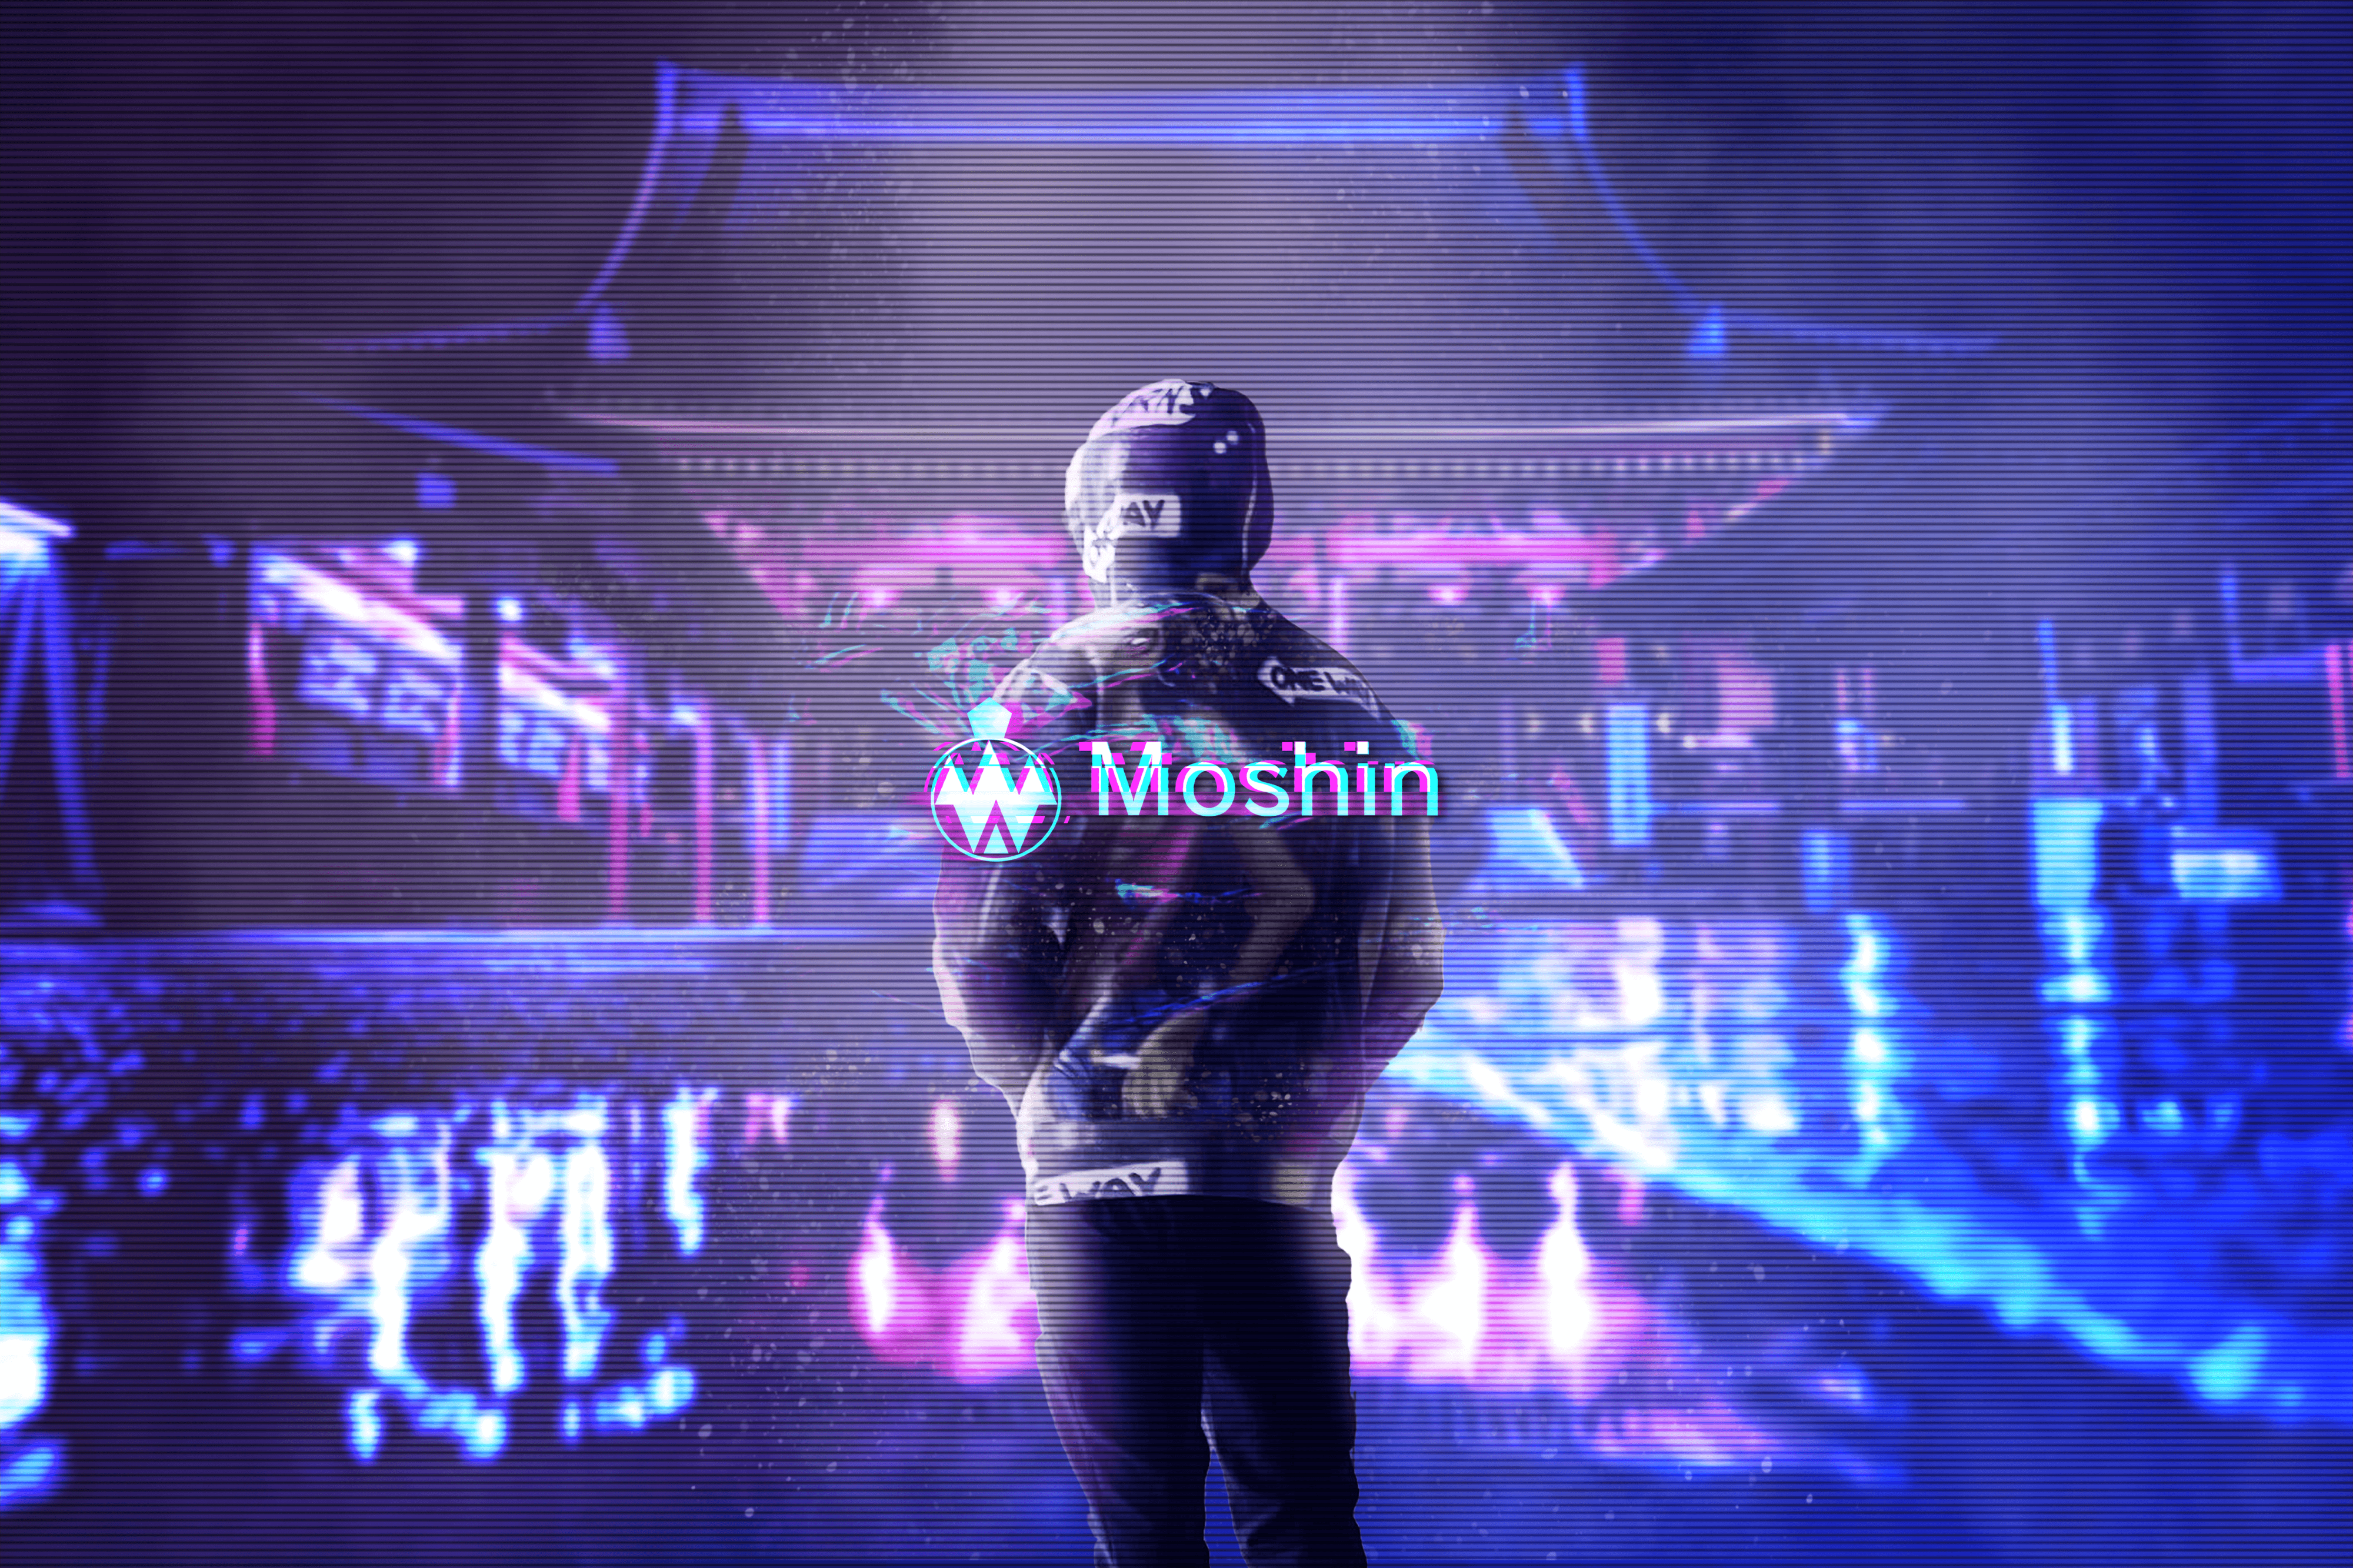 Moshin_JP banner